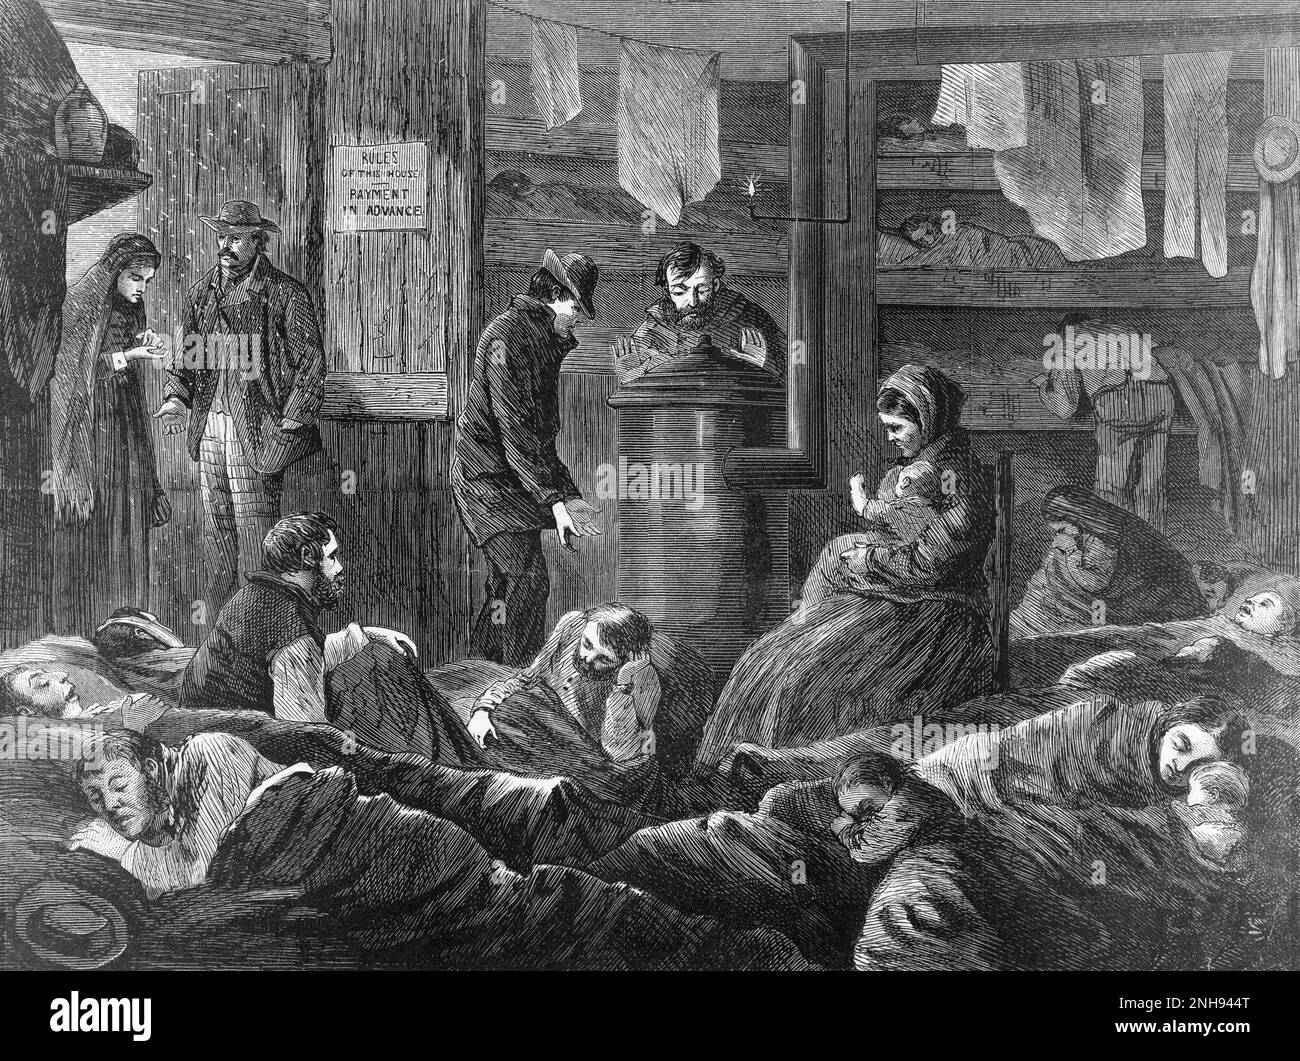 Hébergement souterrain pour les sans-abri, Greenwich Street, New York. Illustration de P. Frendeny, Harper's, 20 février 1869. Banque D'Images